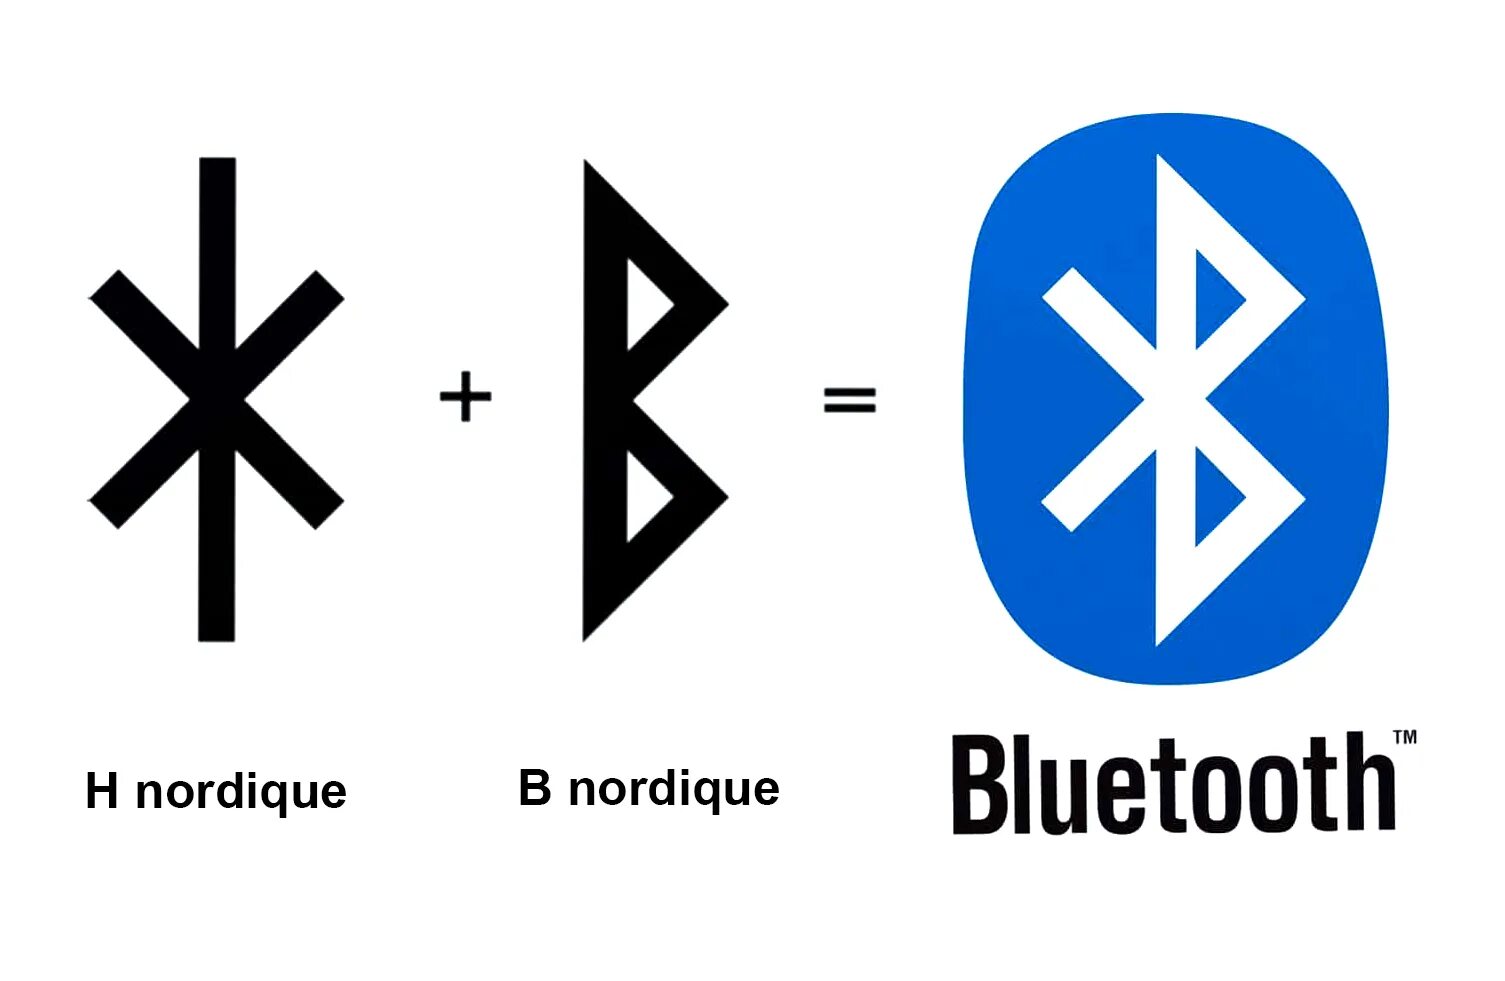 Заходи в bluetooth. Символ Bluetooth. Блютуз иконка. Руна блютуз. Bluetooth руны.